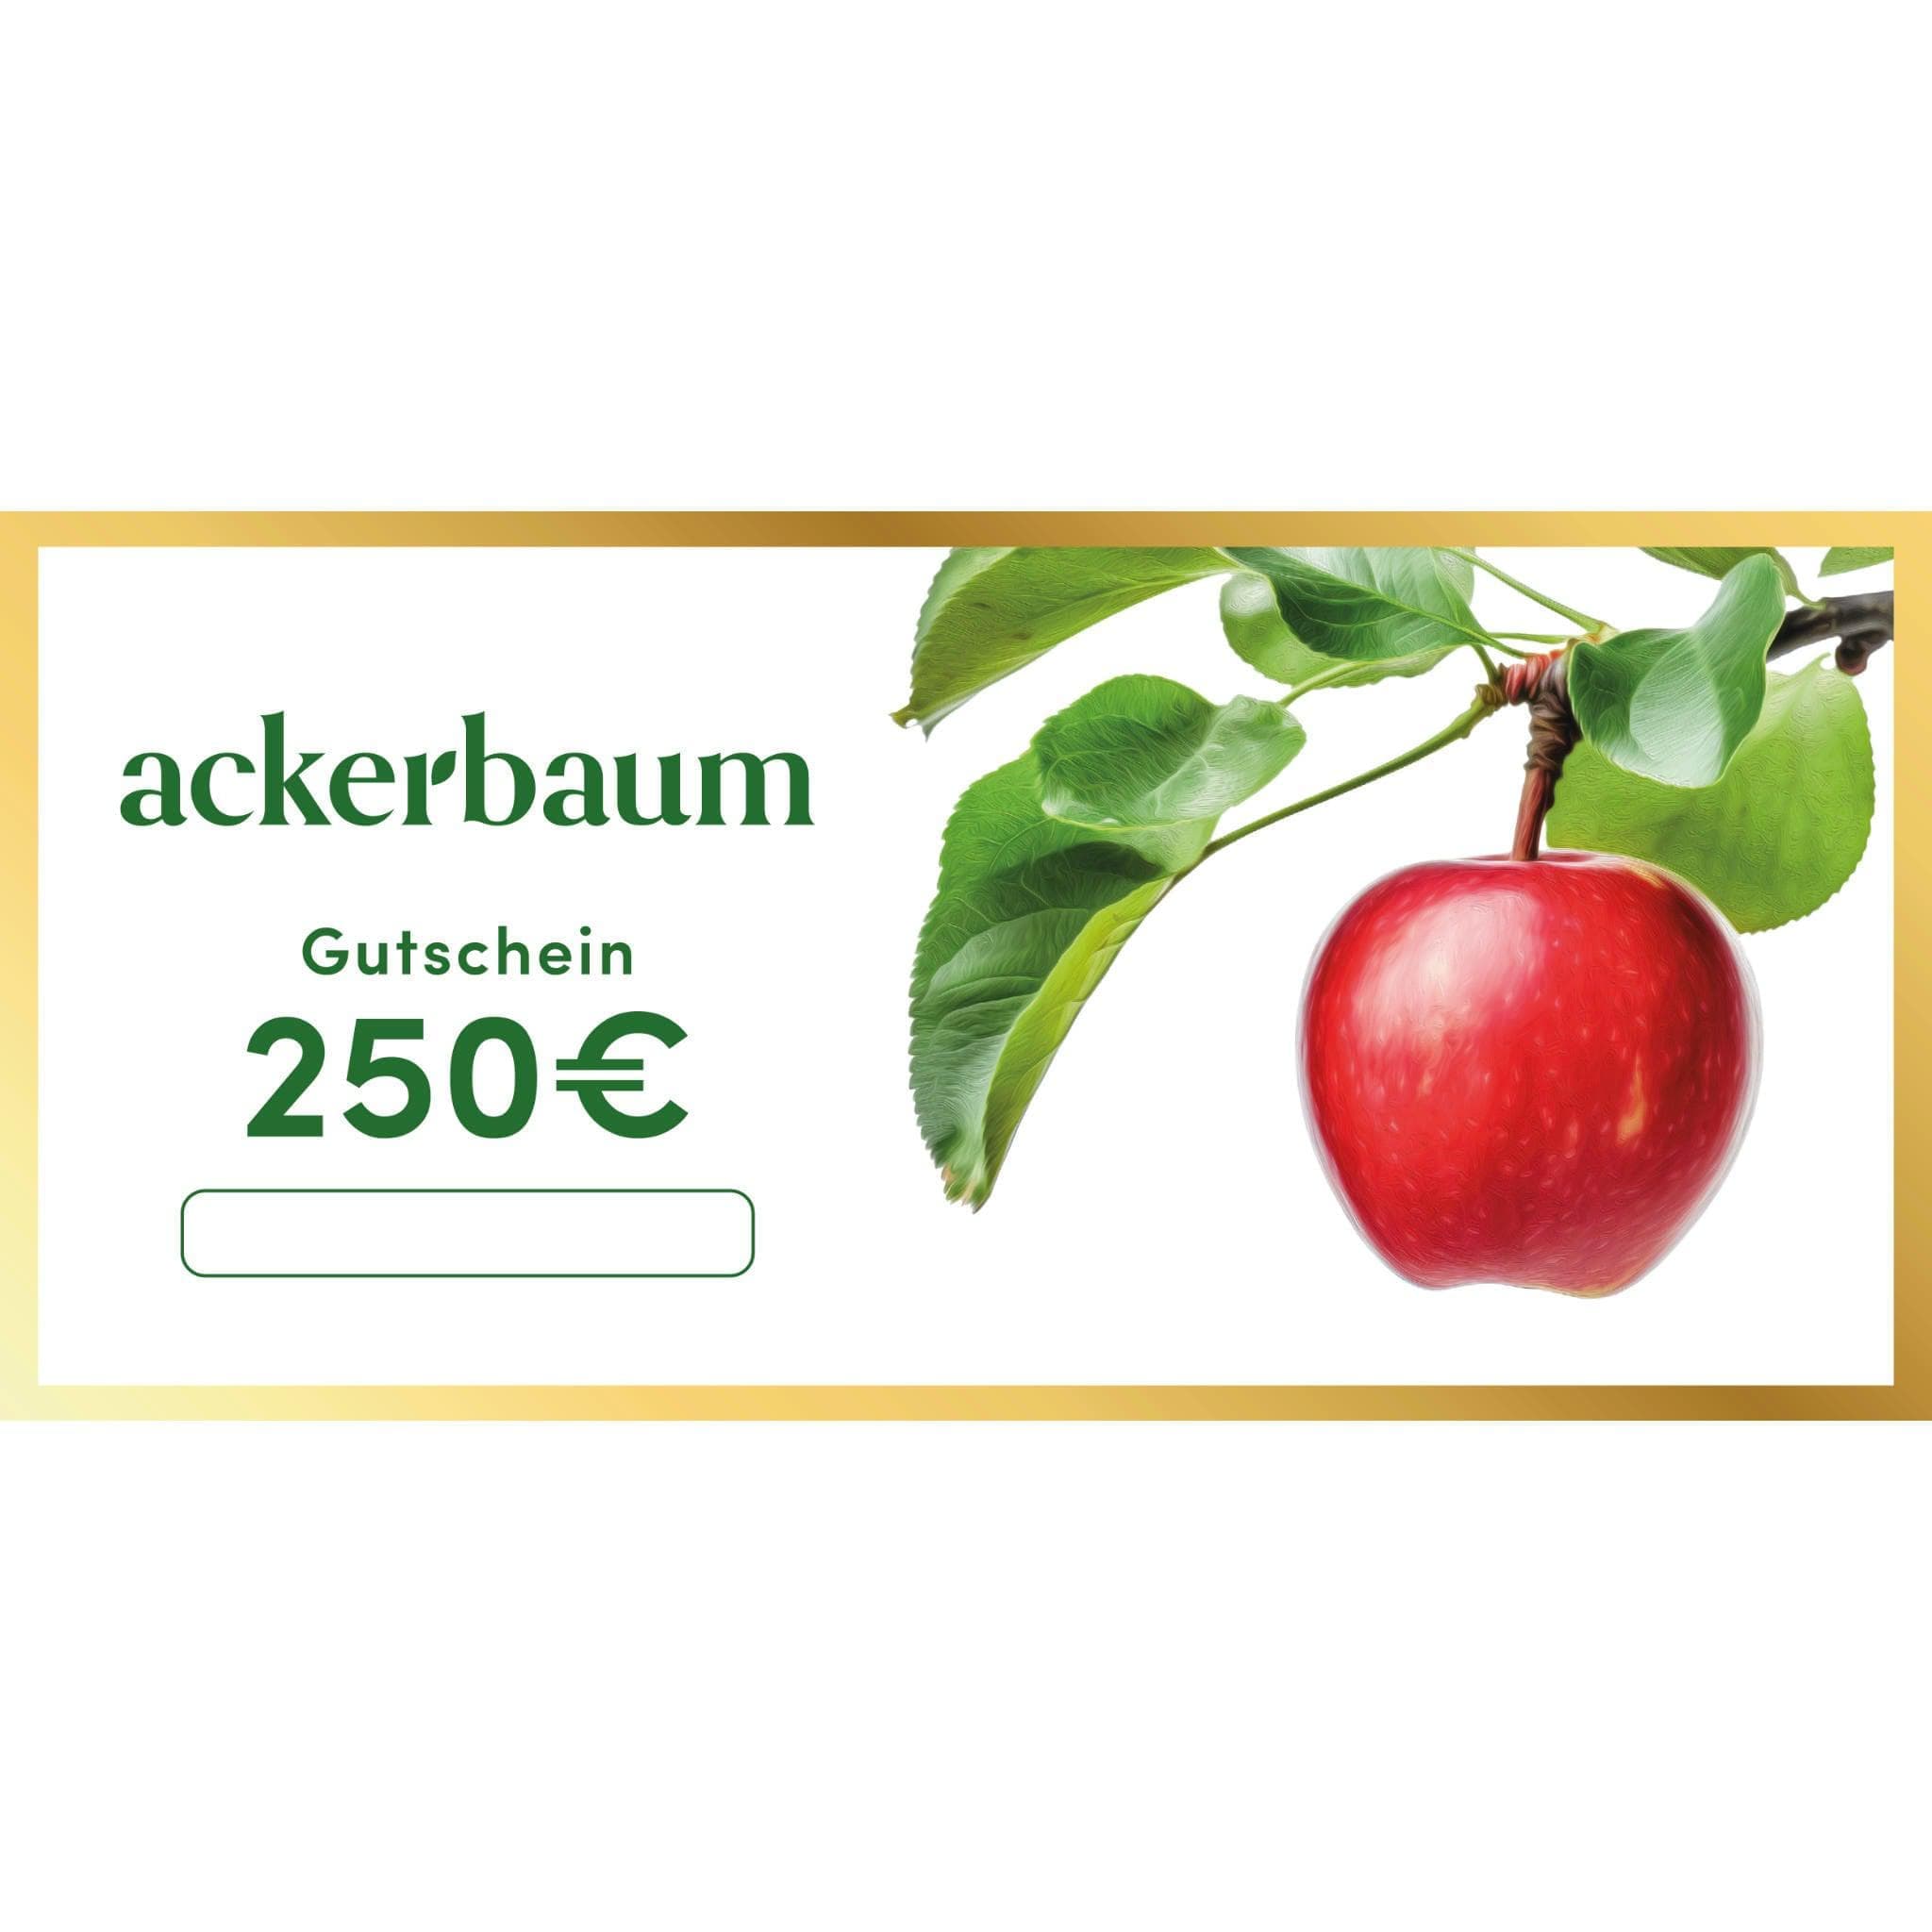 ackerbaum 250€ Gutschein - Edler Papiergutschein mit Goldrand